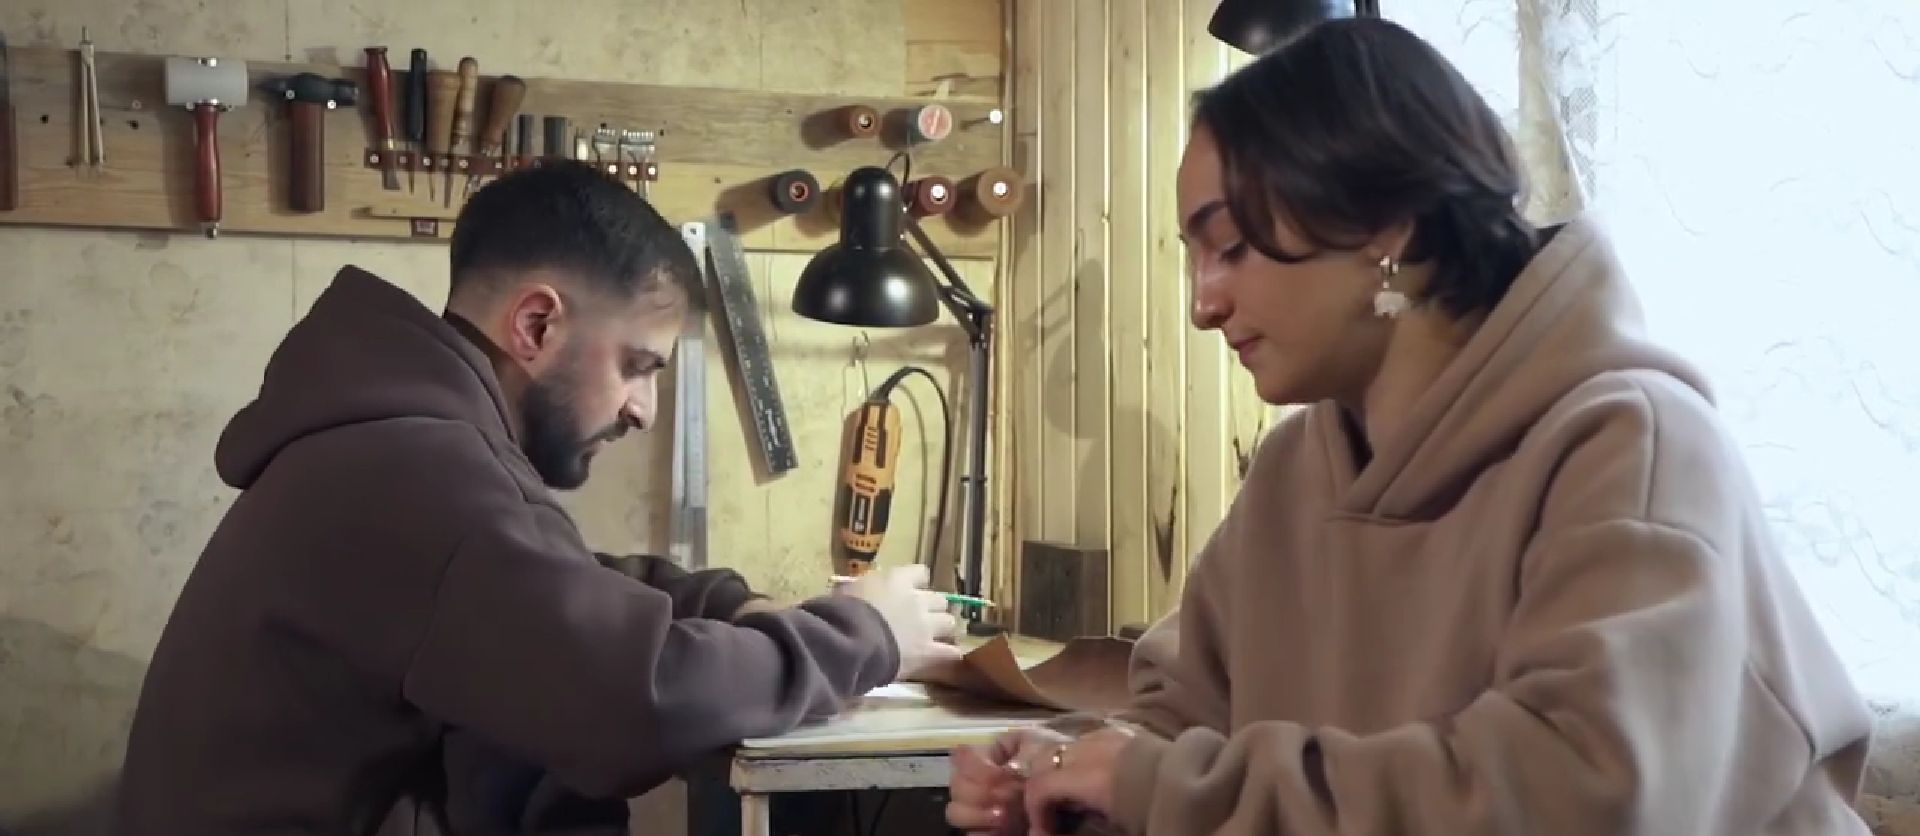 Ավետիսն ու Գոհարը կաշվից տարատեսակ իրեր են պատրաստում, Վանաձորում հիմնել են սեփական բիզնեսը (տեսանյութ)